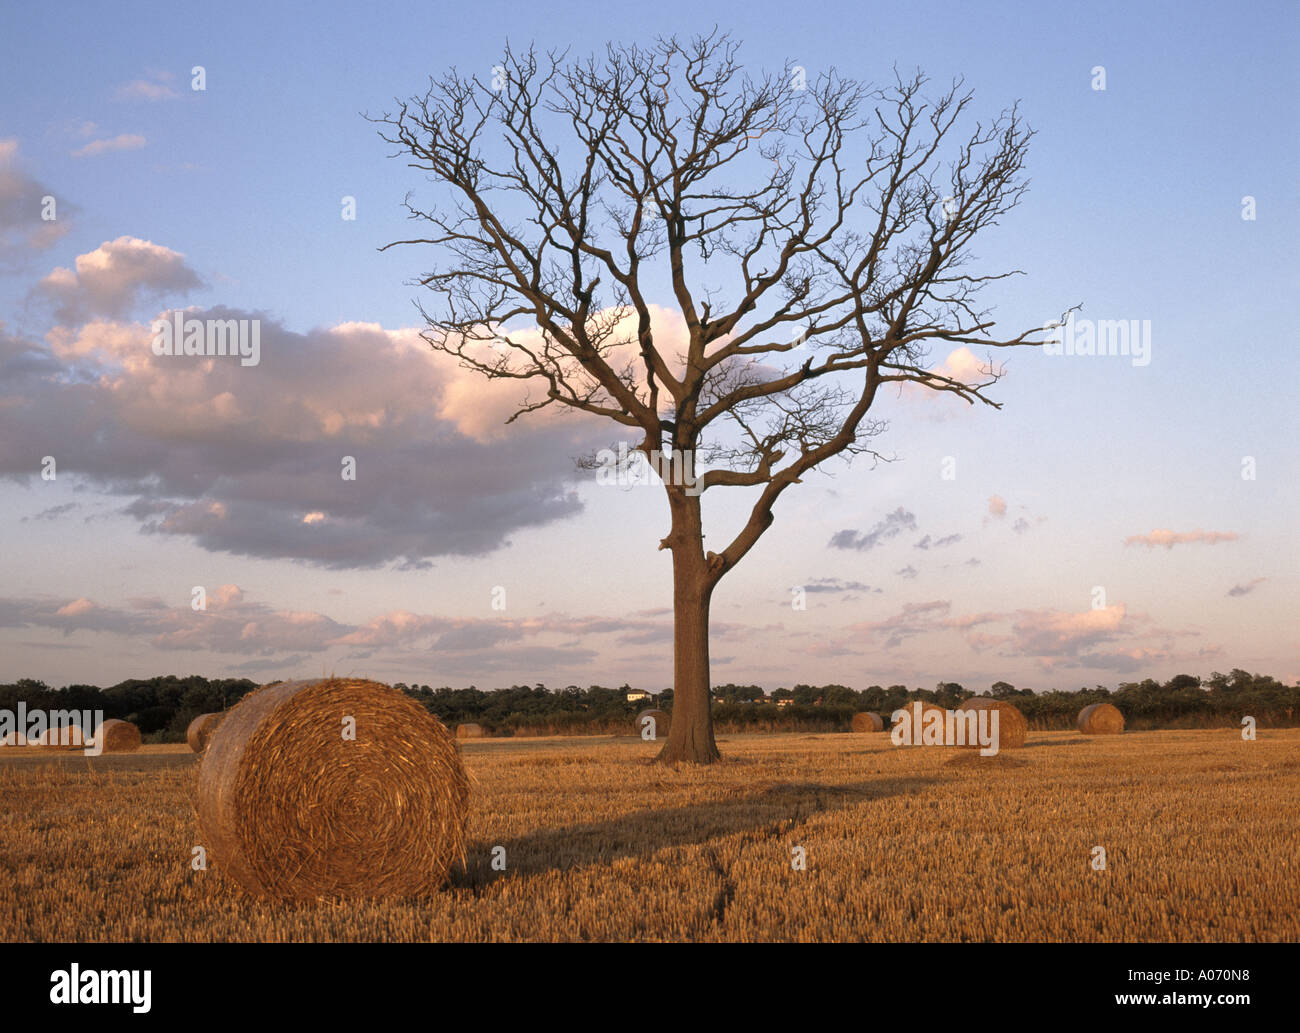 Agriculture campagne paysage balles rondes de paille attendent la collecte des terres agricoles de champ de maïs de chaume après la récolte rurale avec l'arbre mort Essex Angleterre Royaume-Uni Banque D'Images